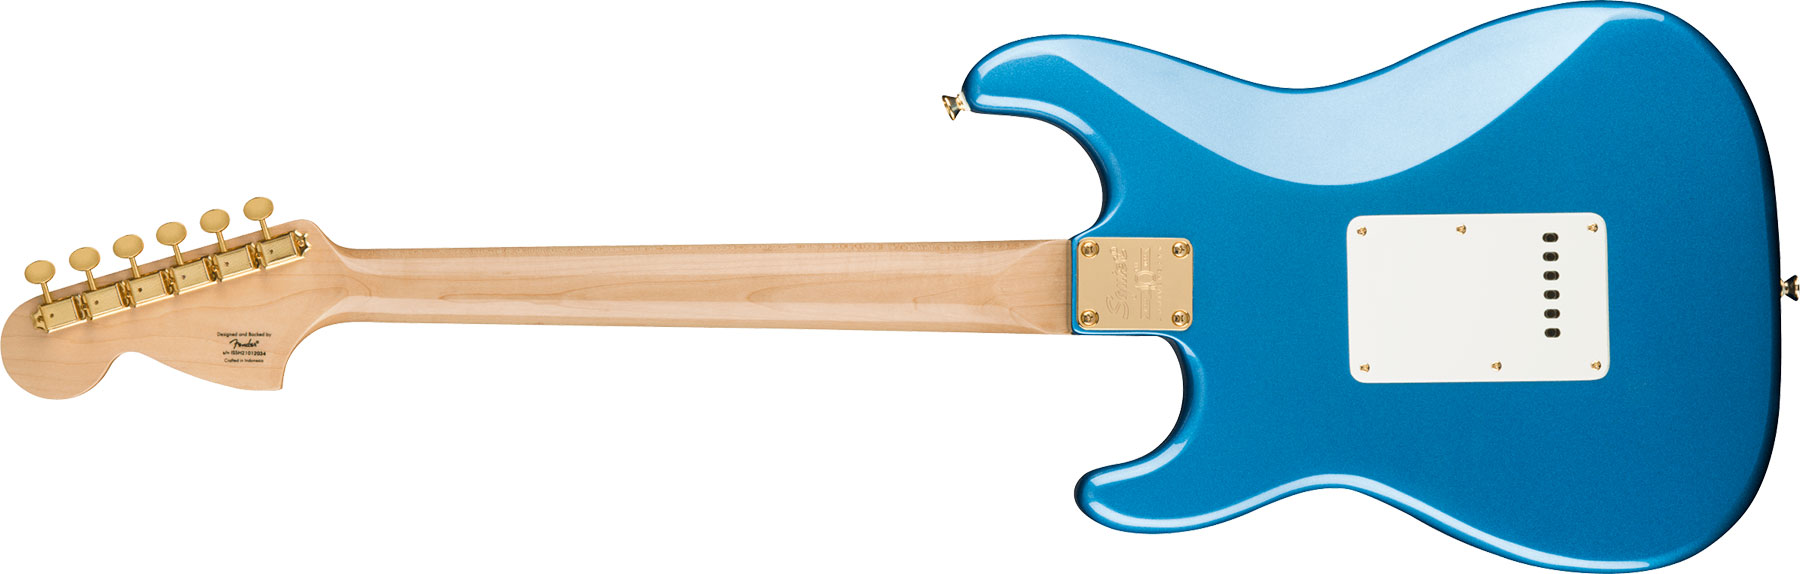 Squier Strat 40th Anniversary Gold Edition Lau - Lake Placid Blue - Guitarra eléctrica con forma de str. - Variation 1